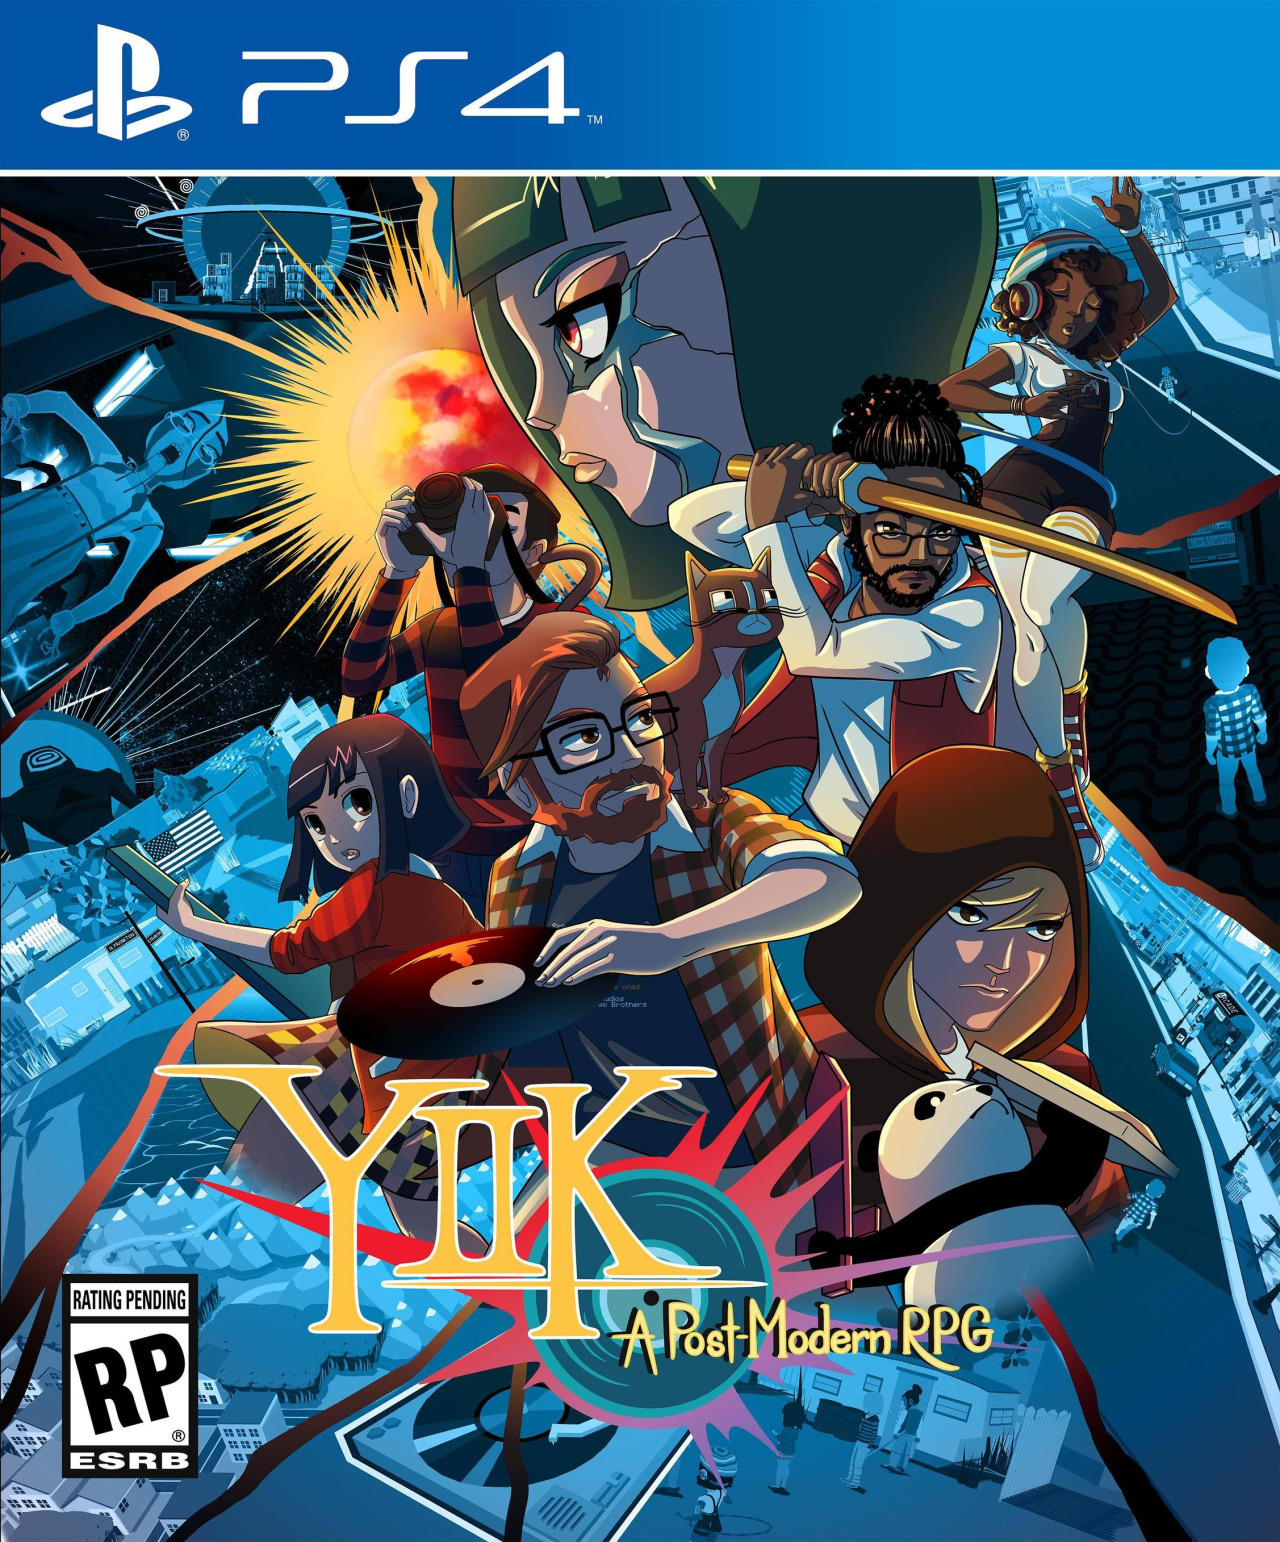 YIIK: A Postmodern RPG 2019